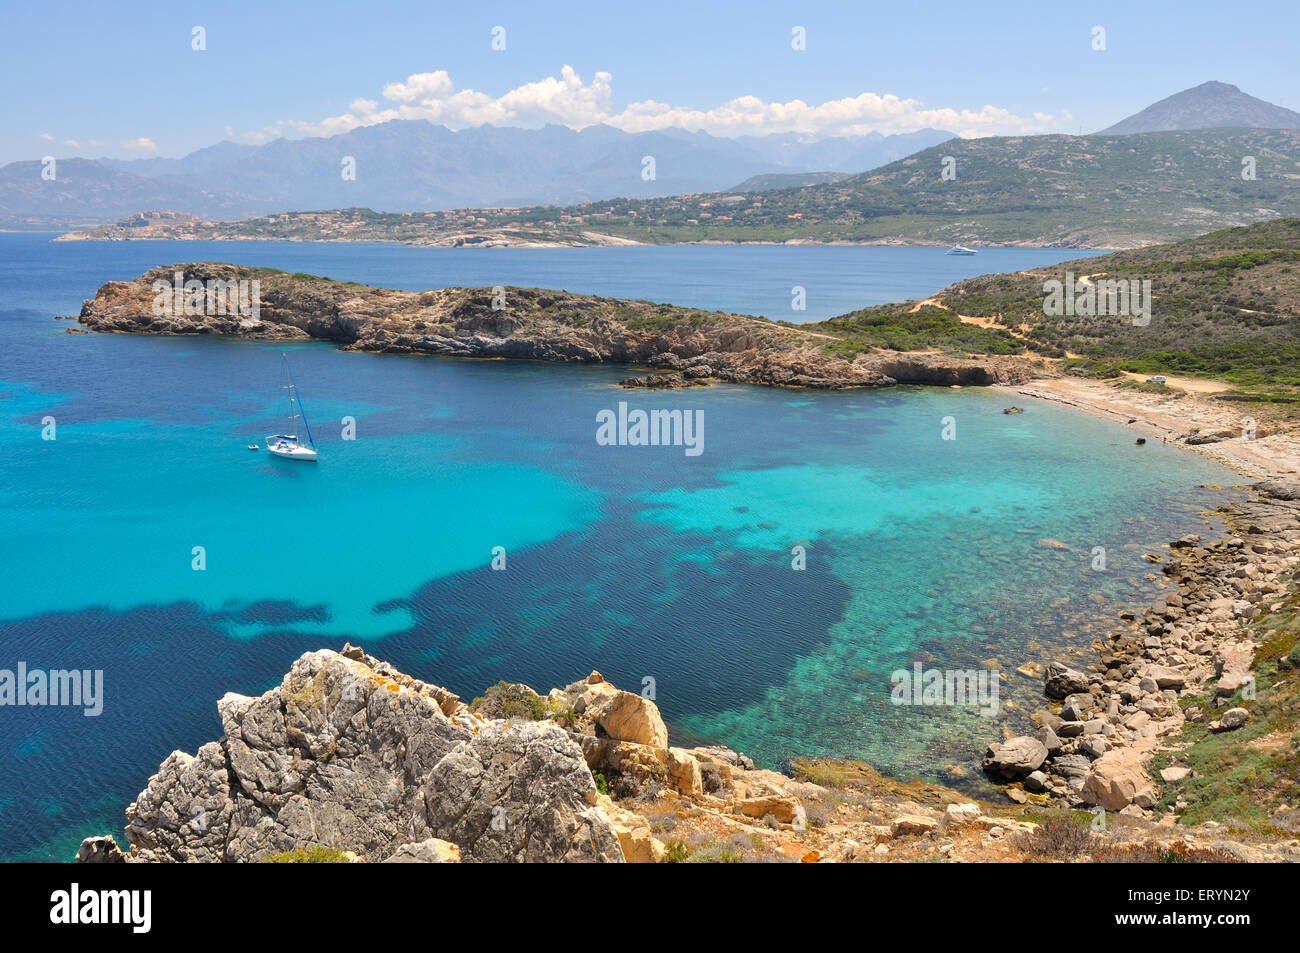 Bateau sur l'eau turquoise entourée de falaises - Corse Banque D'Images